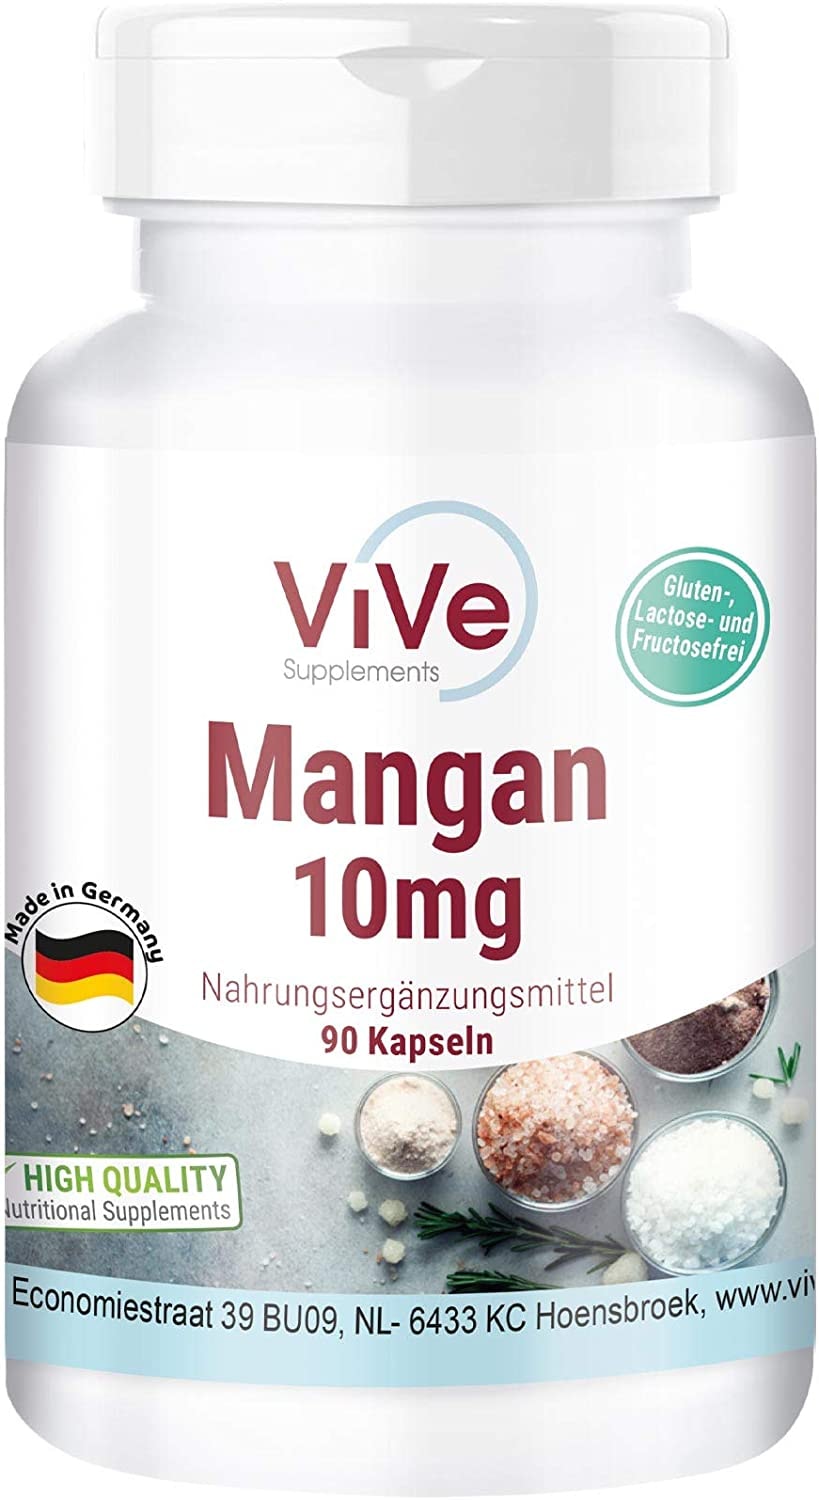 ViVe Supplements - Mangan - 10mg - 90 Kapseln - Hochdosiert - Vegan